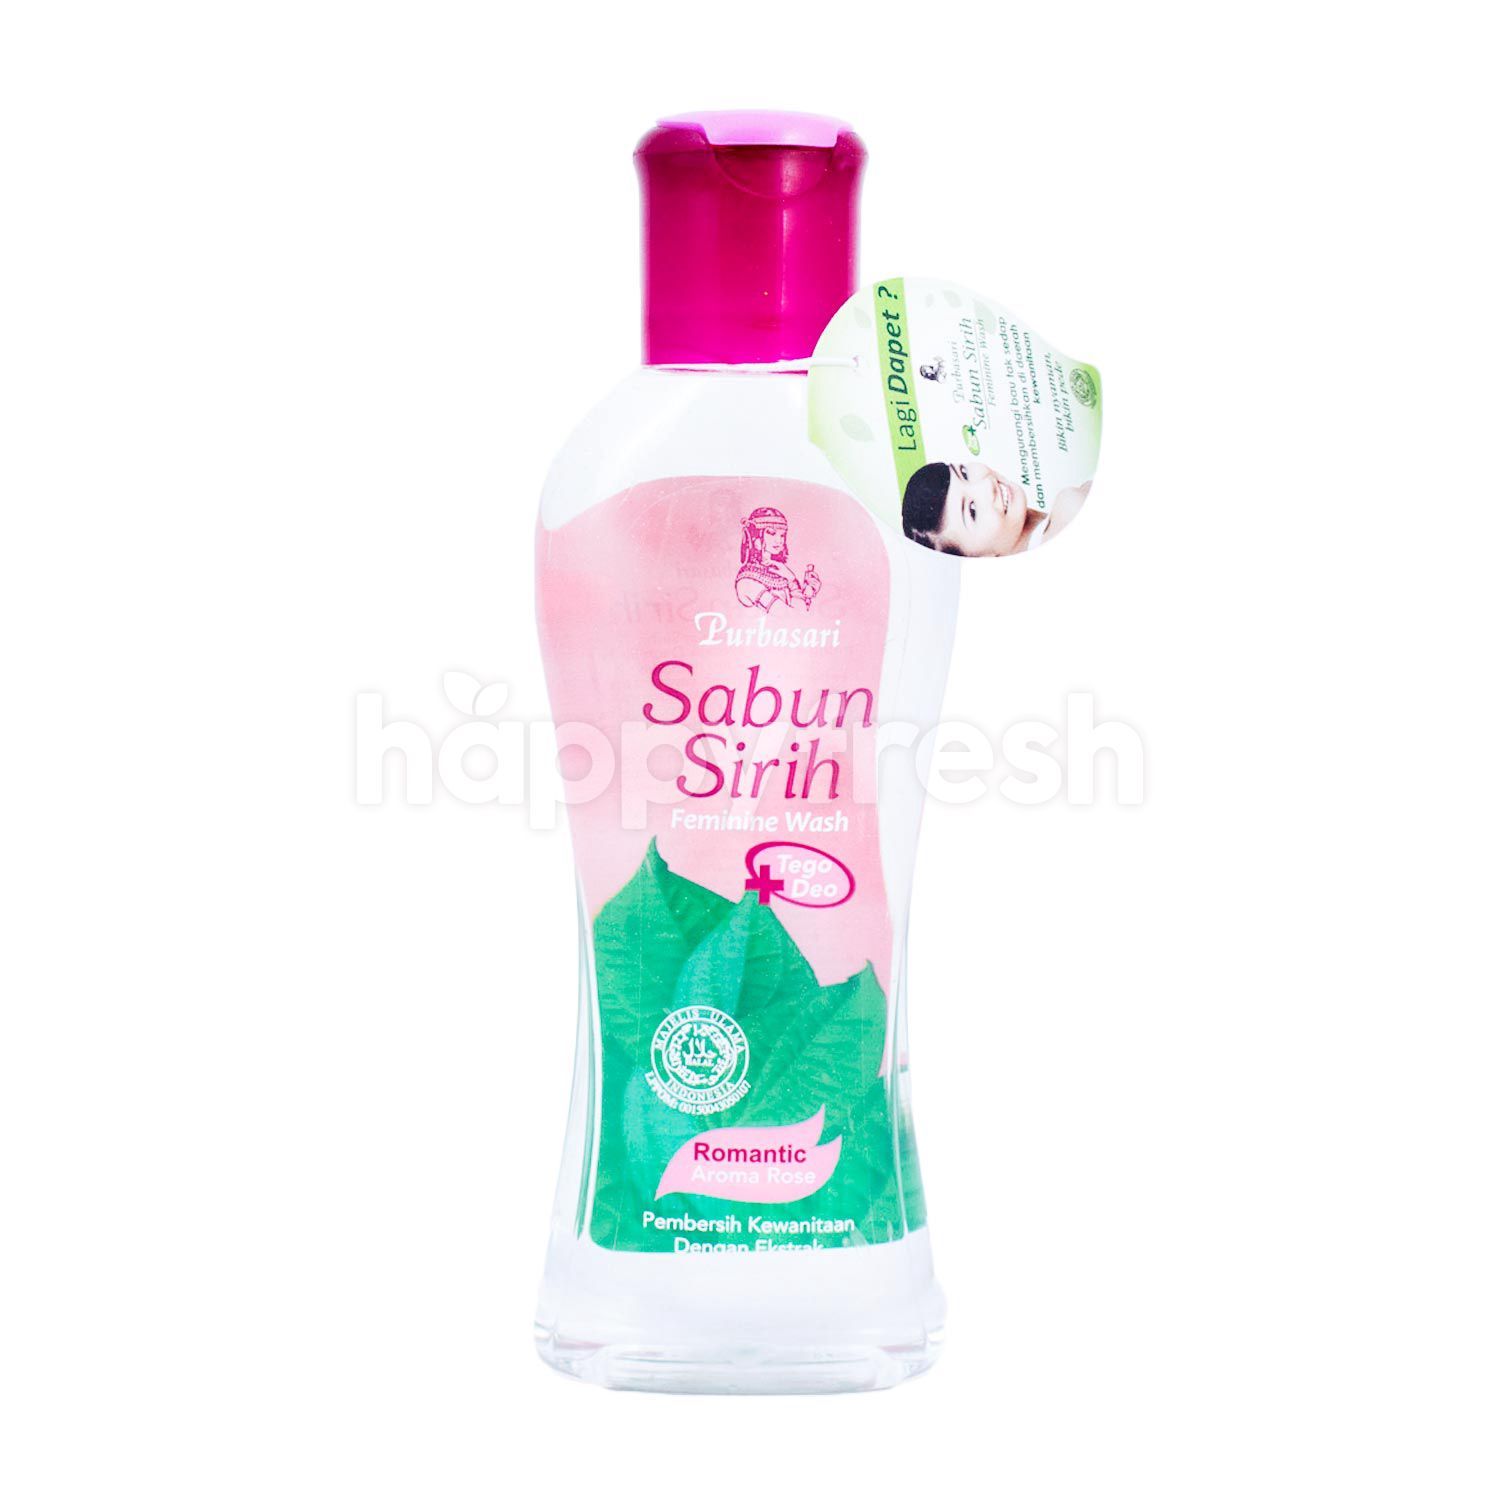 Purbasari Sabun Sirih Feminine Wash Romantic and similar items